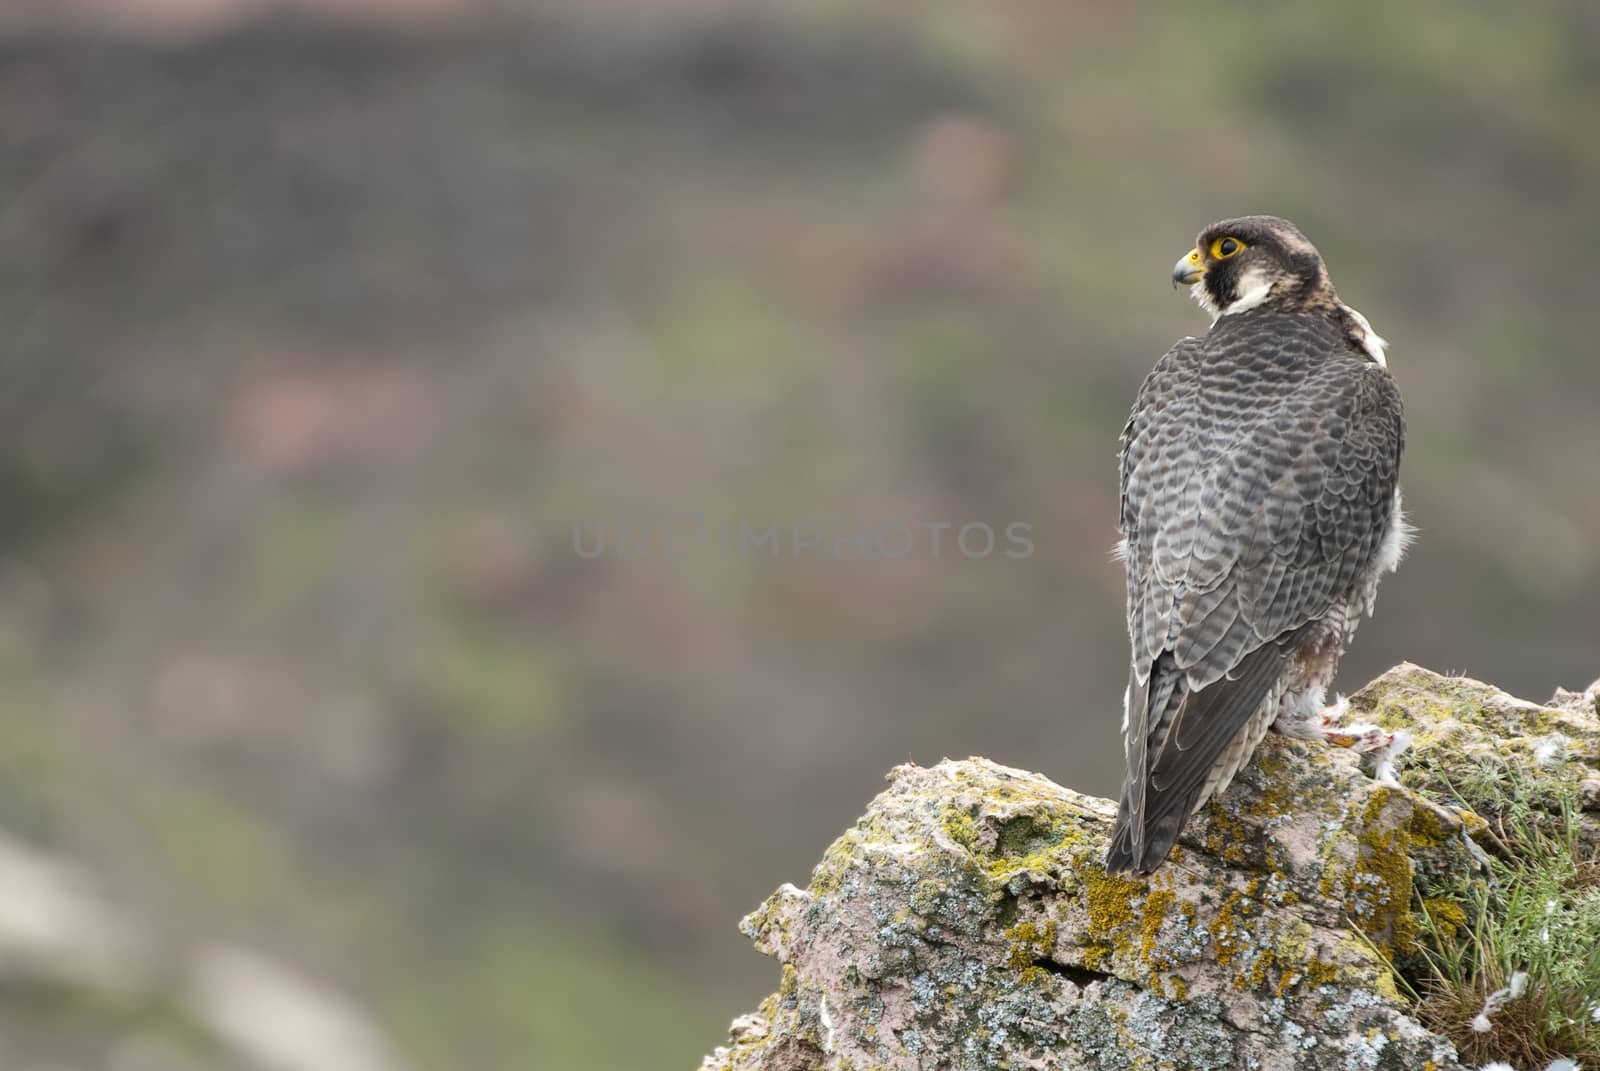 Peregrine falcon on the rock. Bird of prey, Male portrait, Falco peregrinus